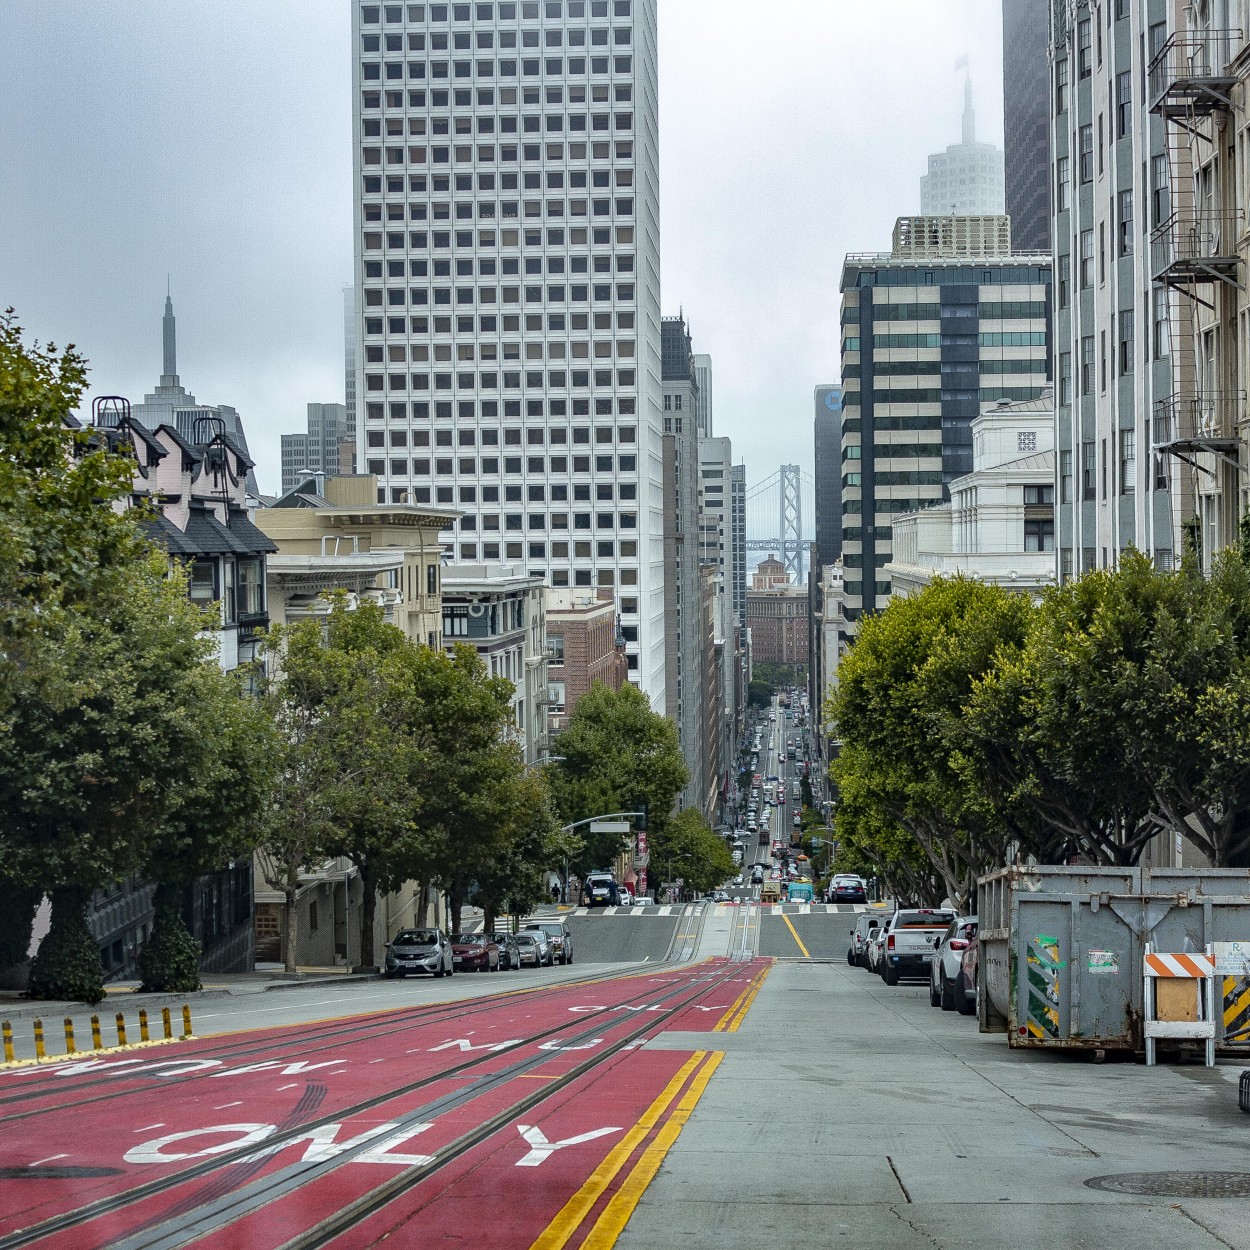 "Las calles de San Francisco" de Ricardo Wychlo